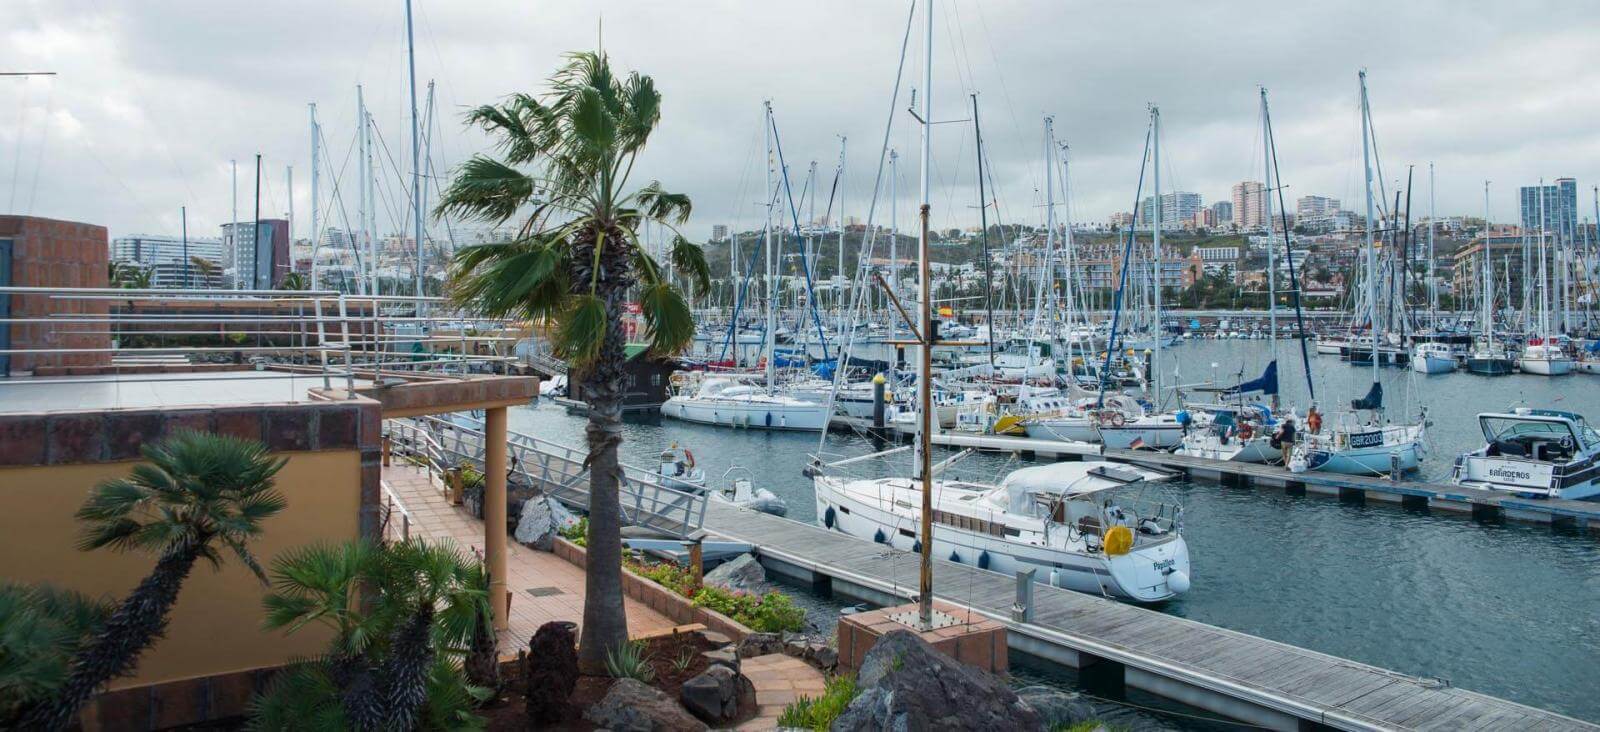 Visita rápida alrededor del Puerto de Las Palmas de Gran Canaria - galeria2